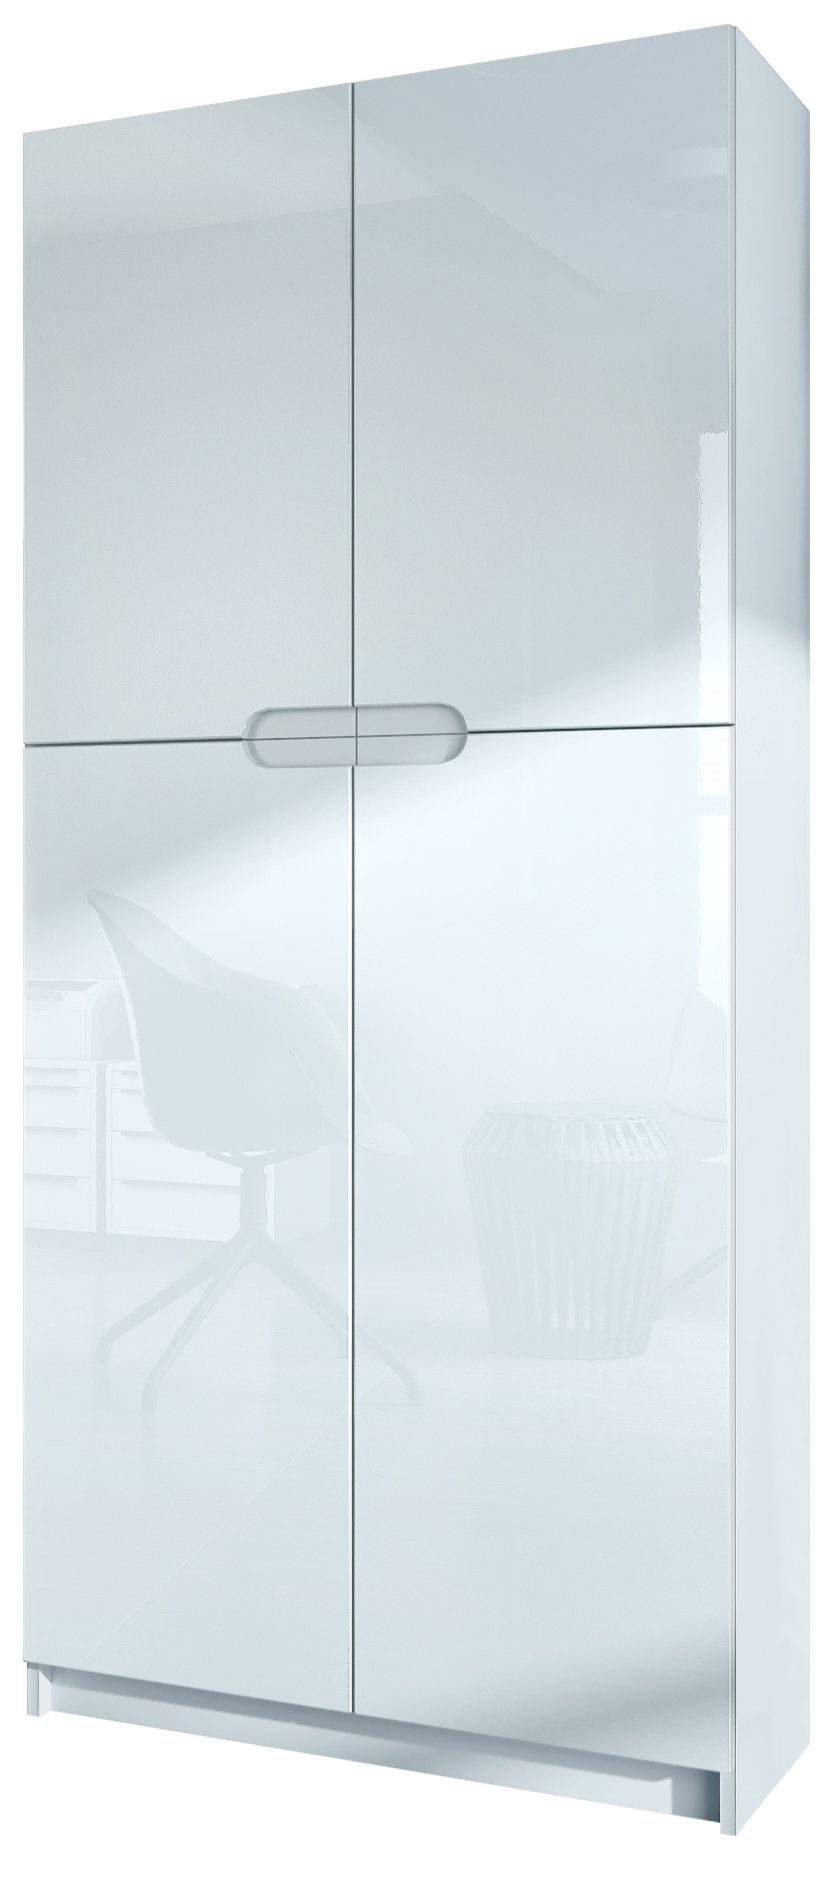 Vladon Aktenschrank Logan (Aktenschrank, mit 5 Fächern und 4 Türen) Weiß matt/Weiß Hochglanz (82 x 185 x 37 cm) Fronten in Weiß Hochglanz | Aktenschränke